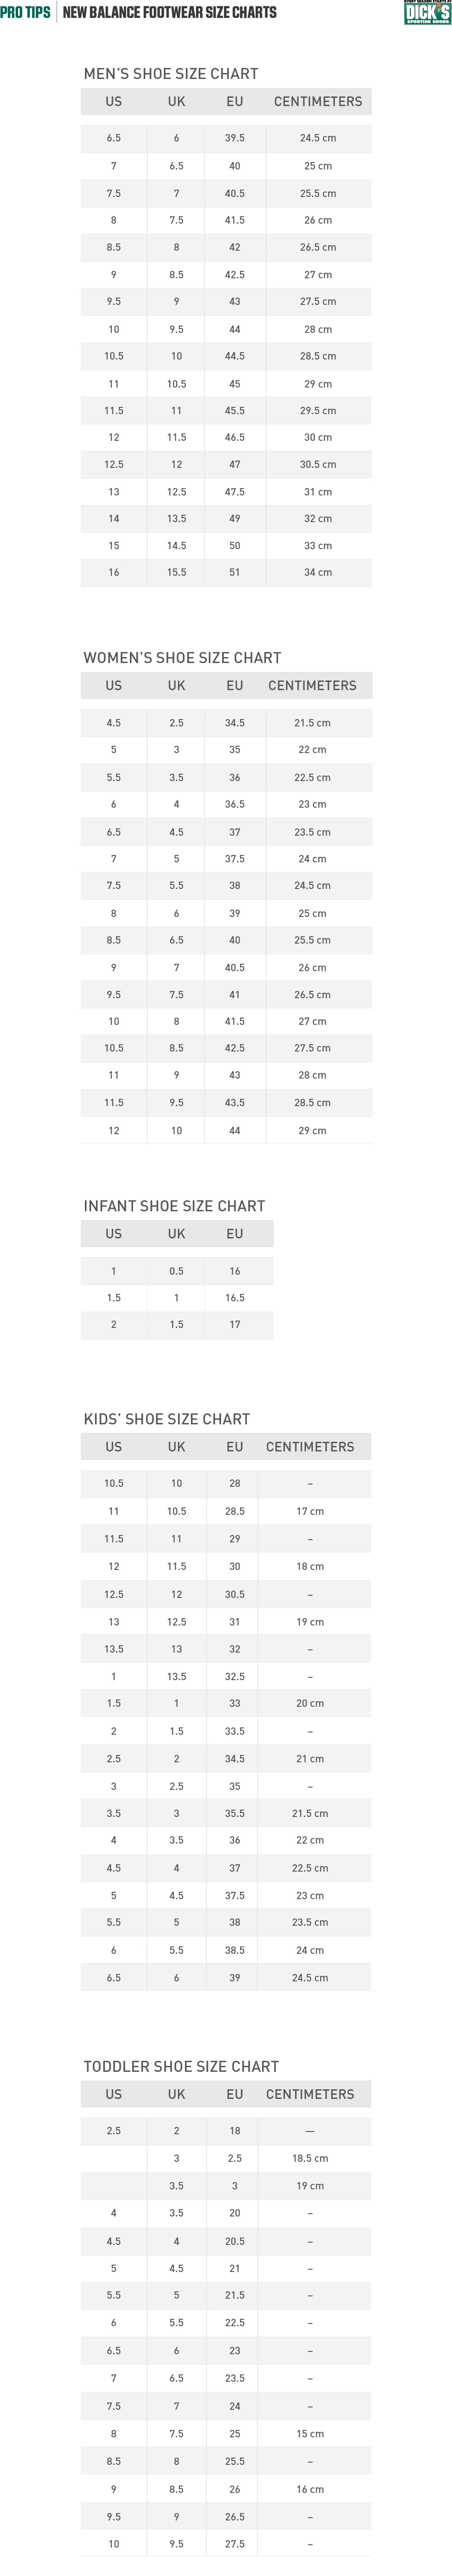 New Balance Women's Shoe Size Chart